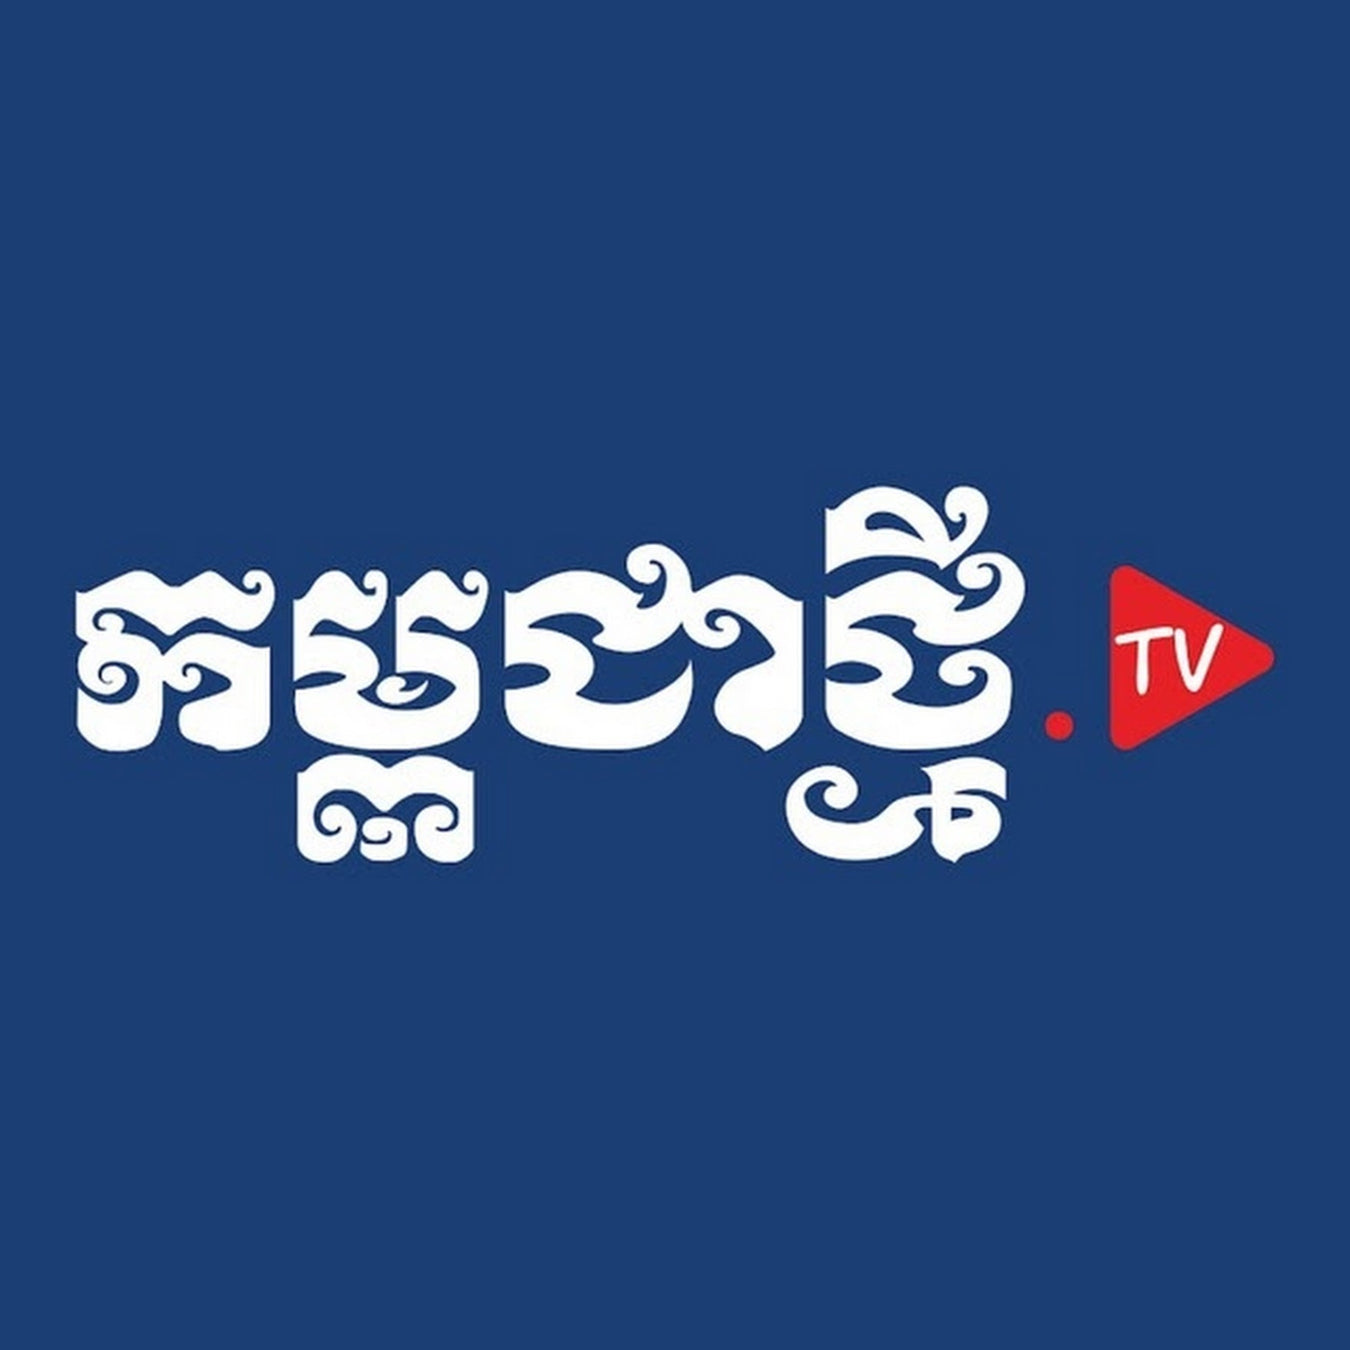 Kampuchea Thmey TV